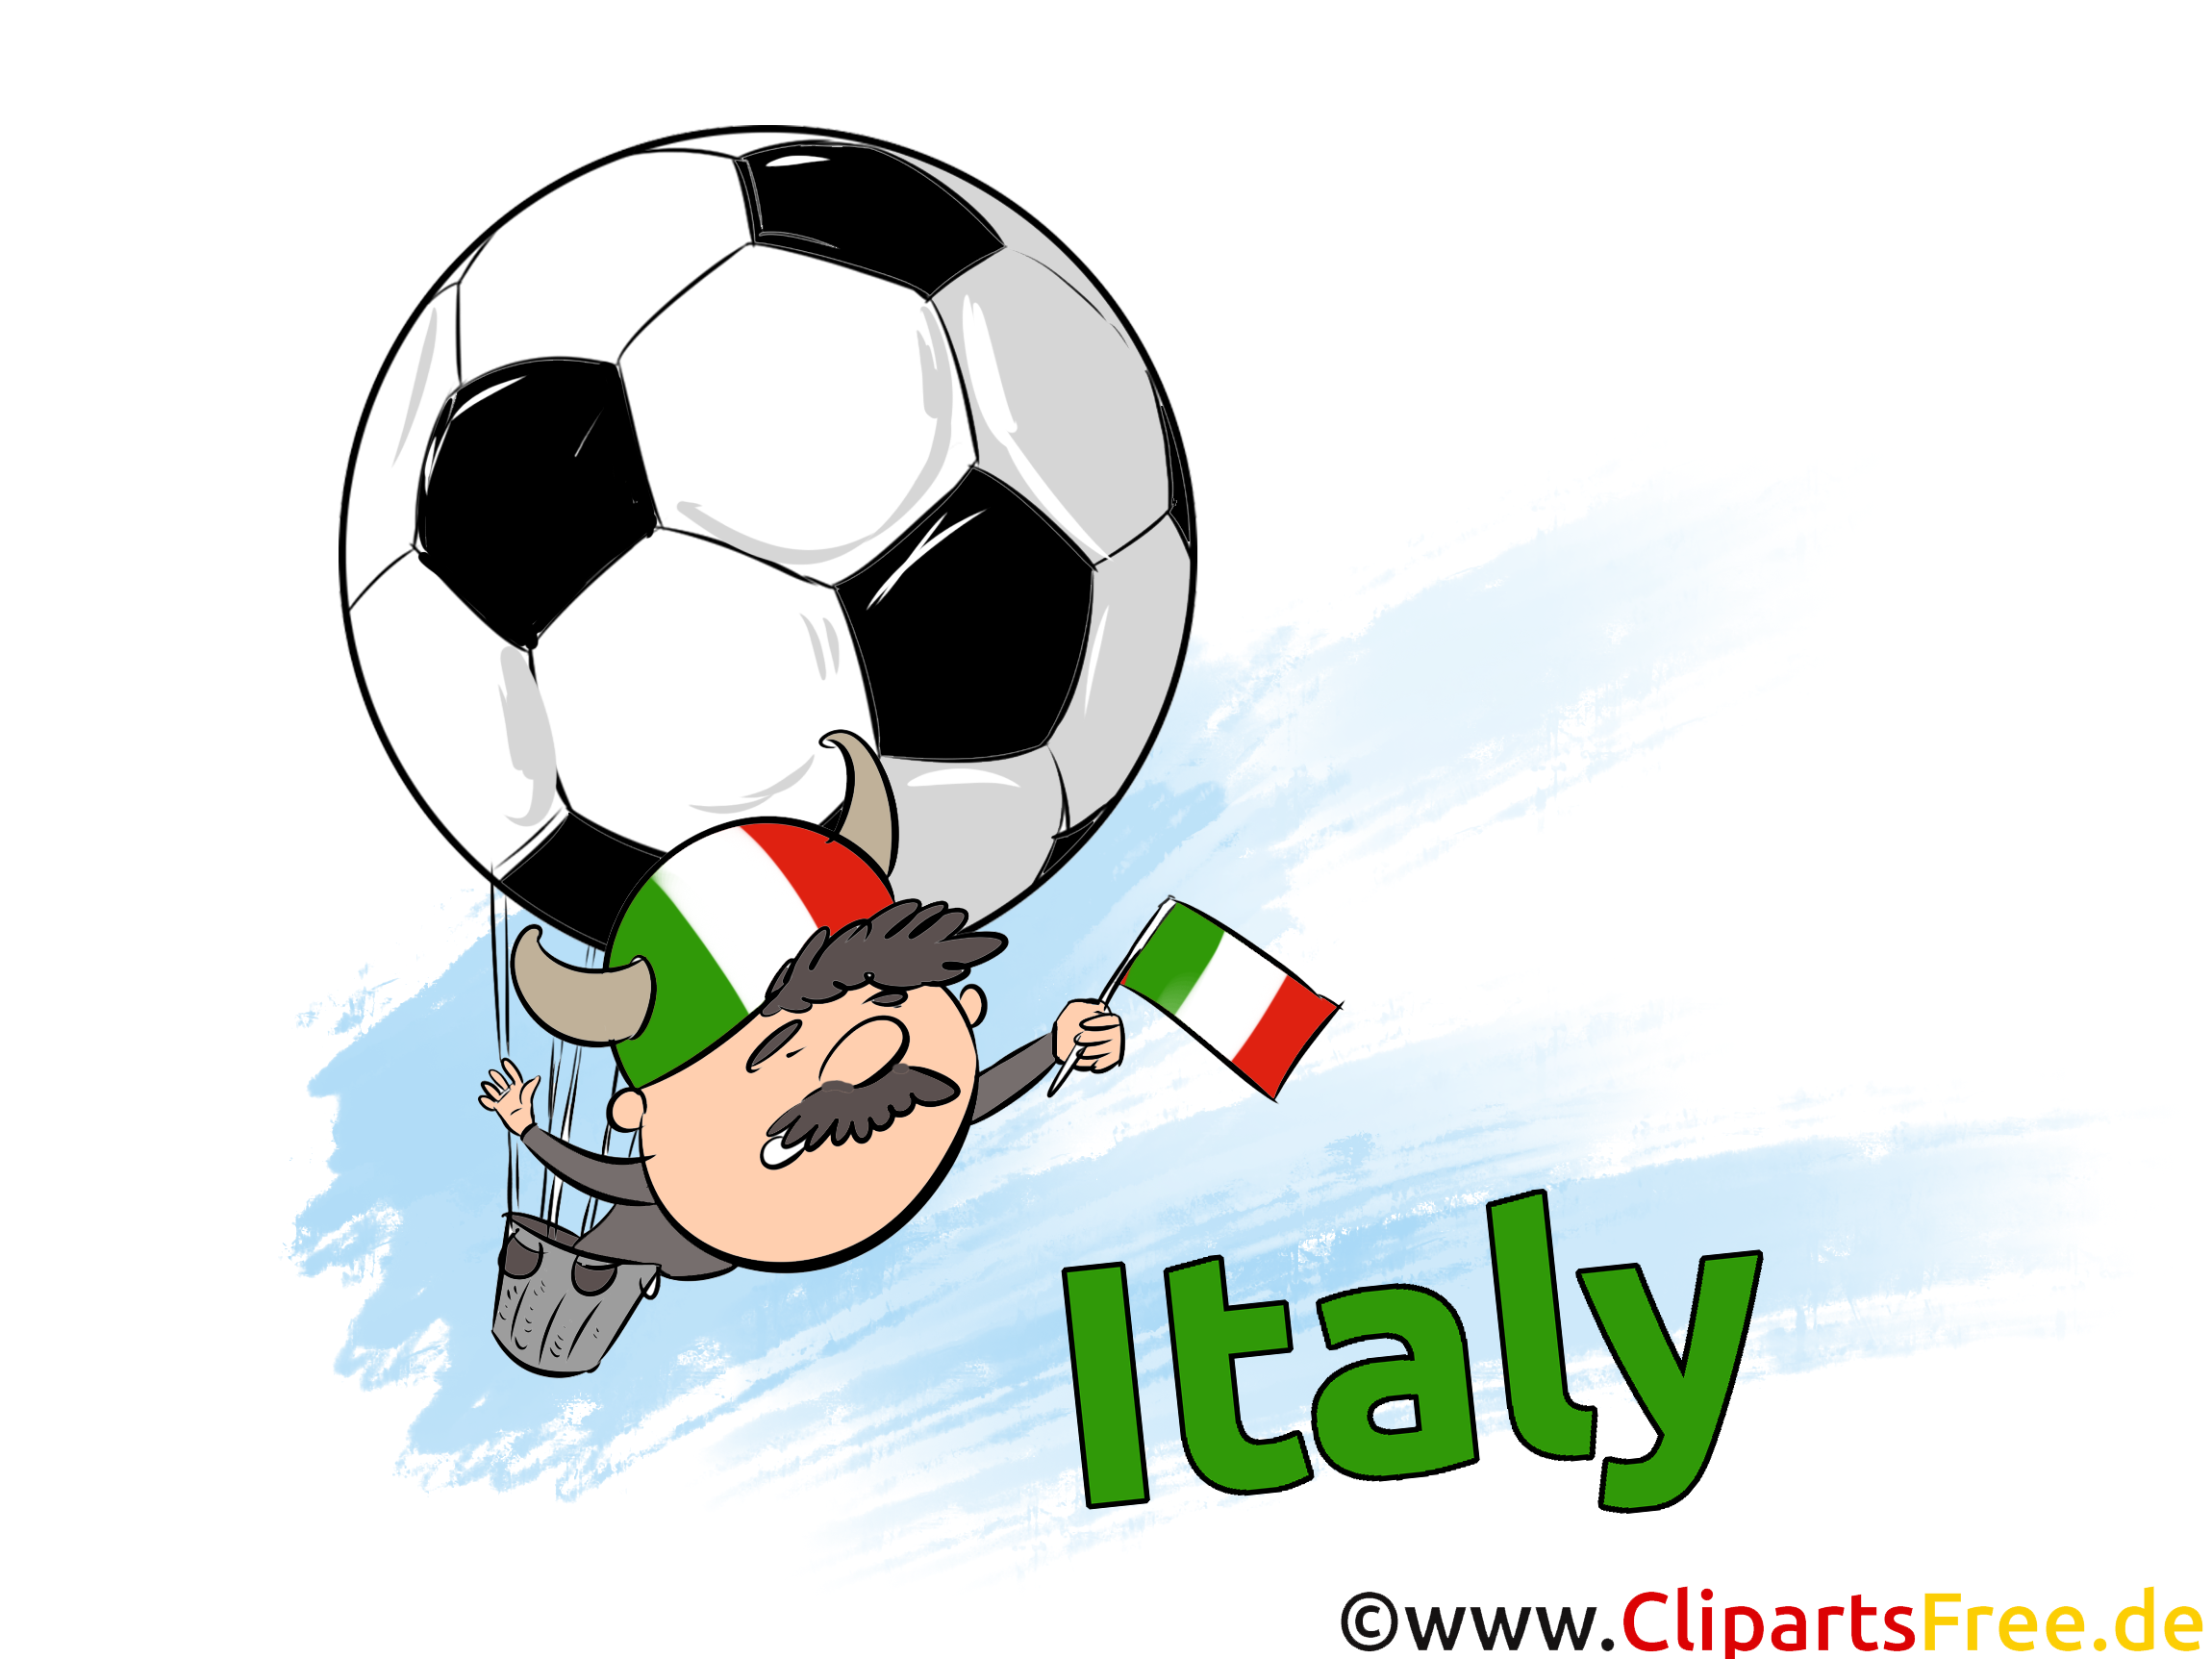 Cliparts Italie Soccer Images pour télécharger